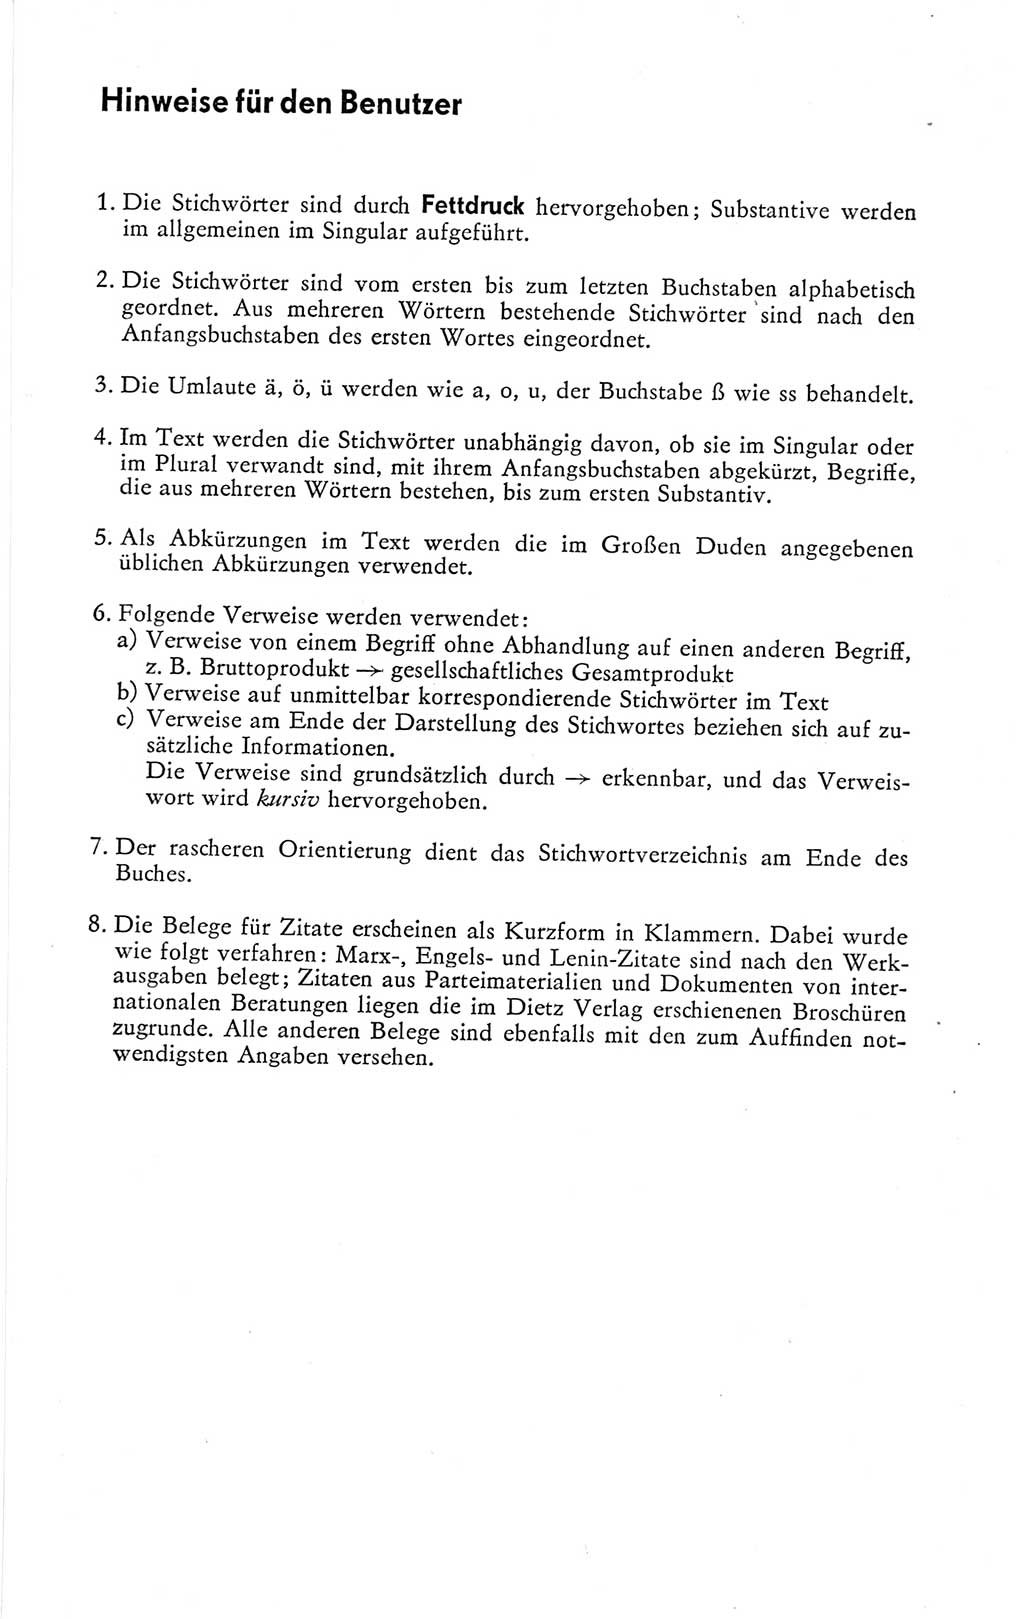 Kleines politisches Wörterbuch [Deutsche Demokratische Republik (DDR)] 1978, Seite 9 (Kl. pol. Wb. DDR 1978, S. 9)